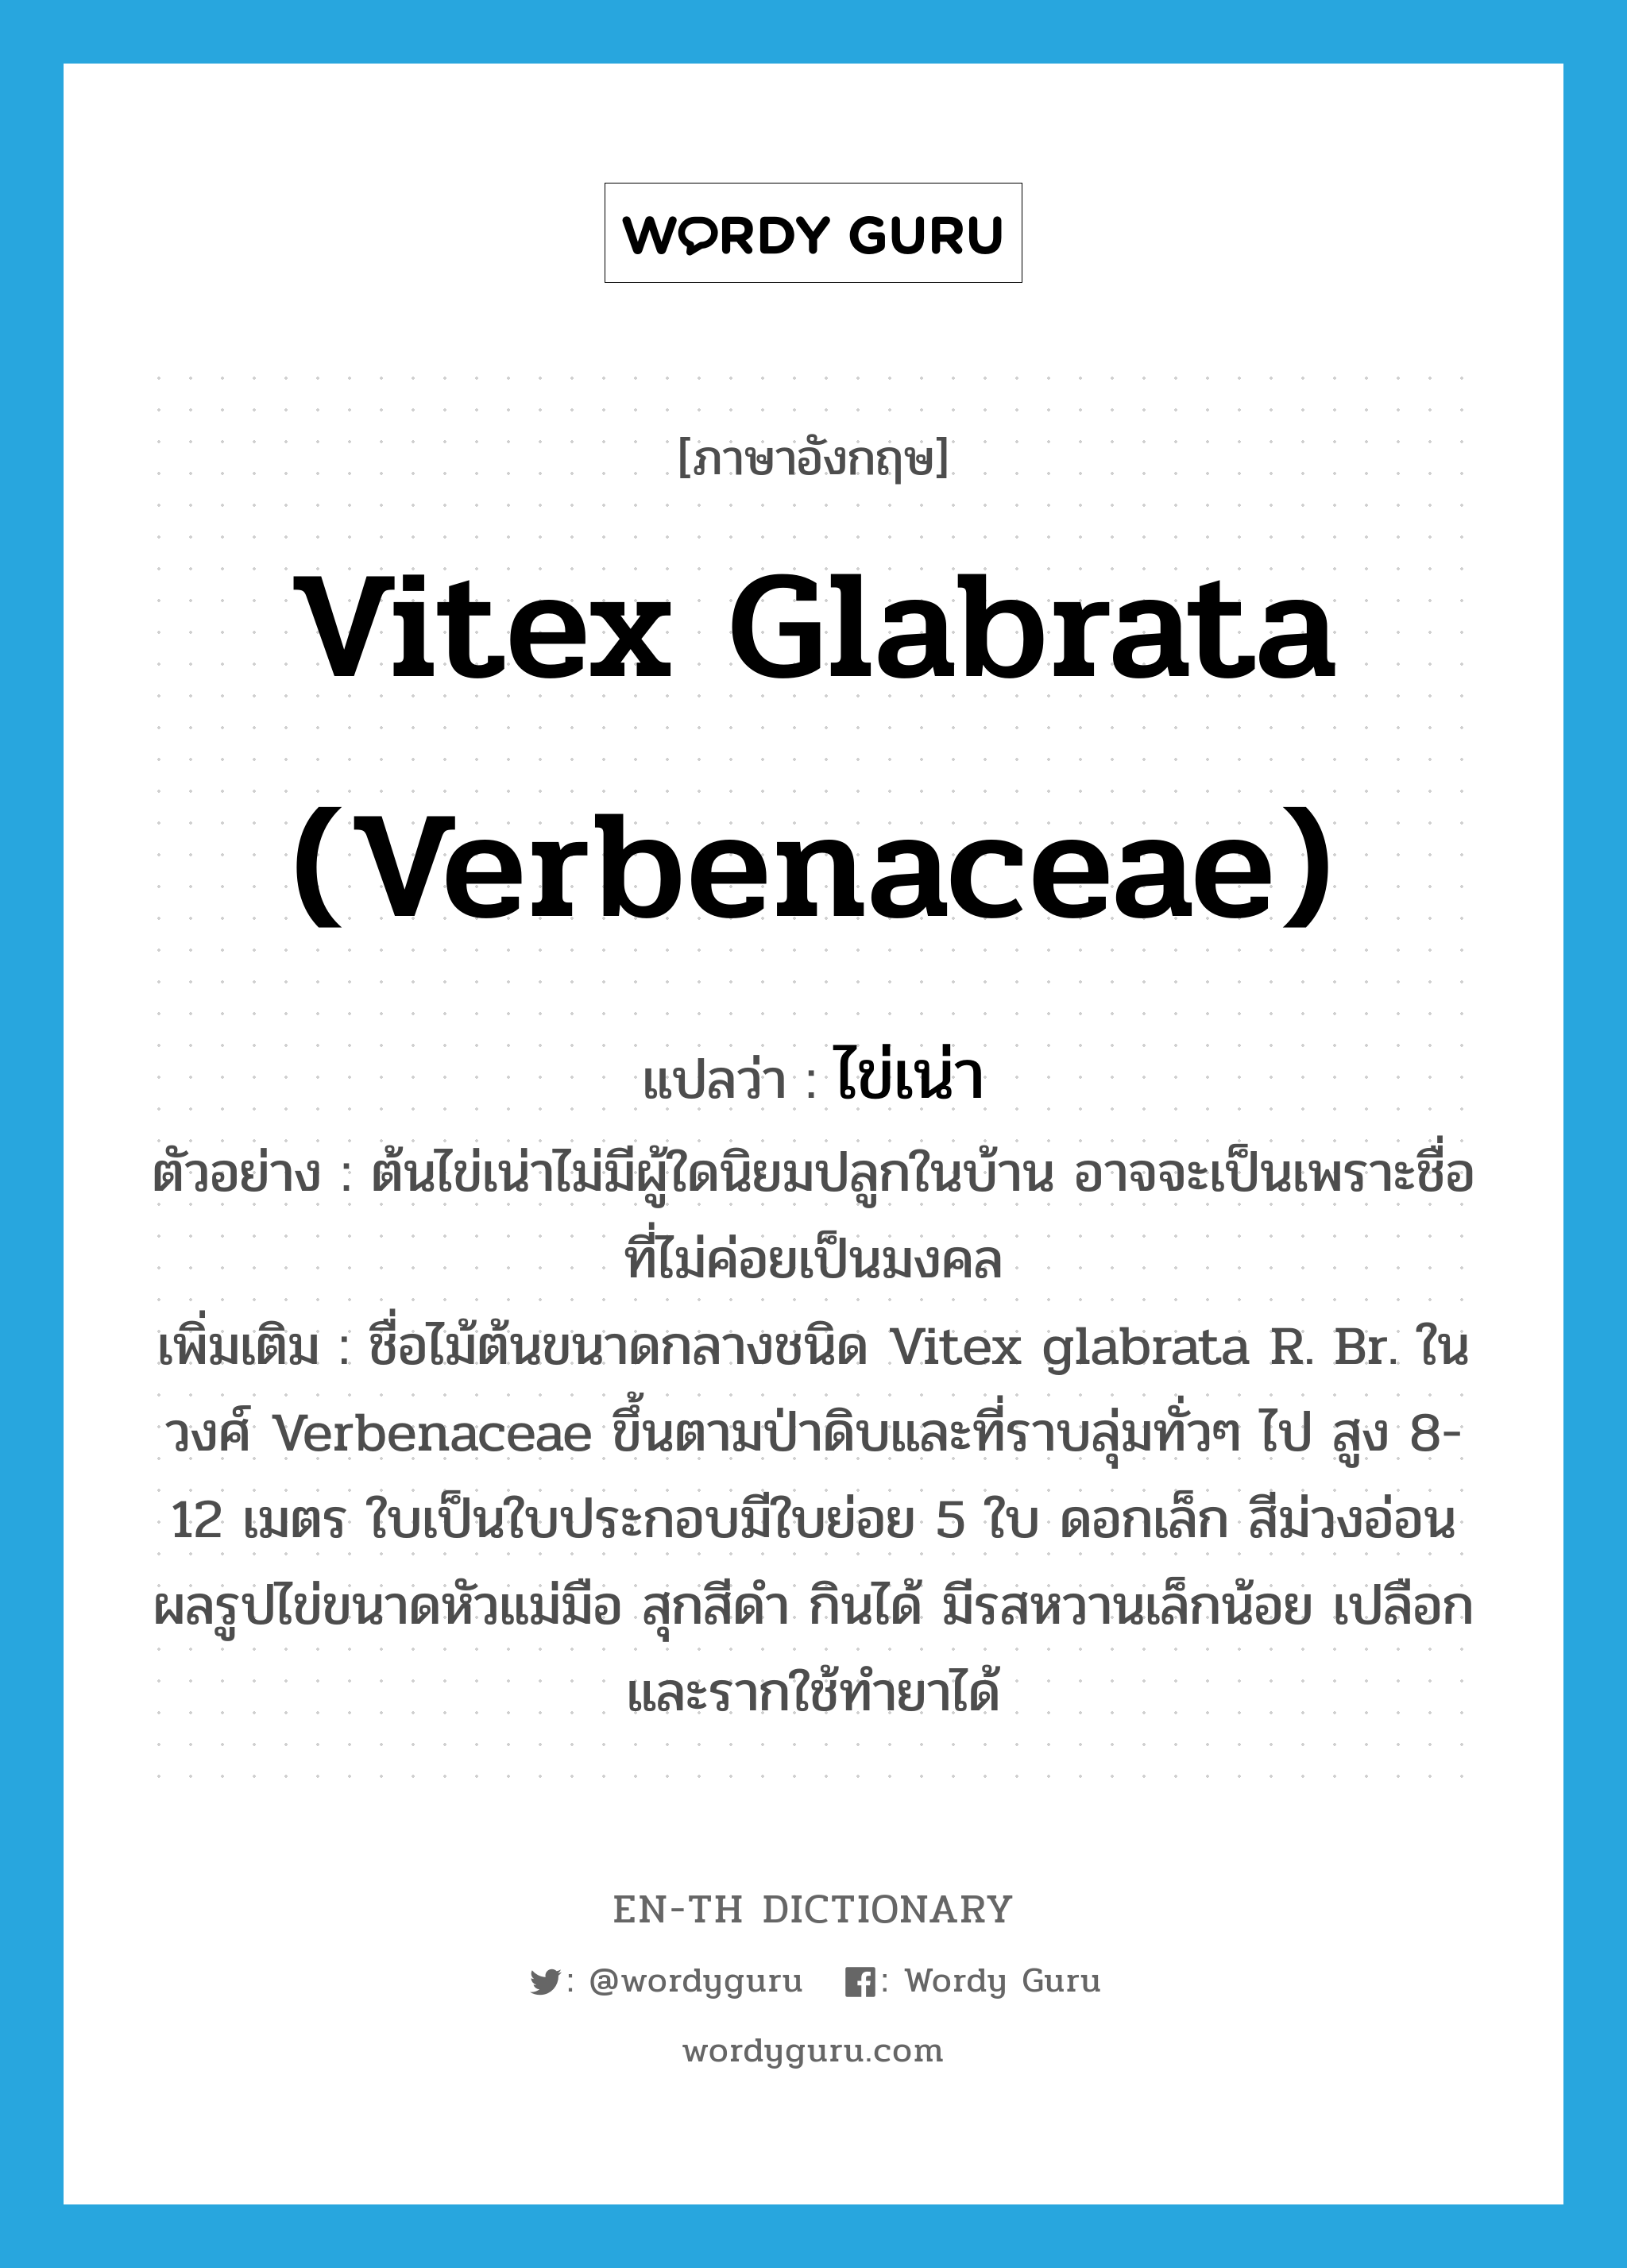 Vitex glabrata (Verbenaceae) แปลว่า?, คำศัพท์ภาษาอังกฤษ Vitex glabrata (Verbenaceae) แปลว่า ไข่เน่า ประเภท N ตัวอย่าง ต้นไข่เน่าไม่มีผู้ใดนิยมปลูกในบ้าน อาจจะเป็นเพราะชื่อที่ไม่ค่อยเป็นมงคล เพิ่มเติม ชื่อไม้ต้นขนาดกลางชนิด Vitex glabrata R. Br. ในวงศ์ Verbenaceae ขึ้นตามป่าดิบและที่ราบลุ่มทั่วๆ ไป สูง 8-12 เมตร ใบเป็นใบประกอบมีใบย่อย 5 ใบ ดอกเล็ก สีม่วงอ่อน ผลรูปไข่ขนาดหัวแม่มือ สุกสีดำ กินได้ มีรสหวานเล็กน้อย เปลือกและรากใช้ทำยาได้ หมวด N